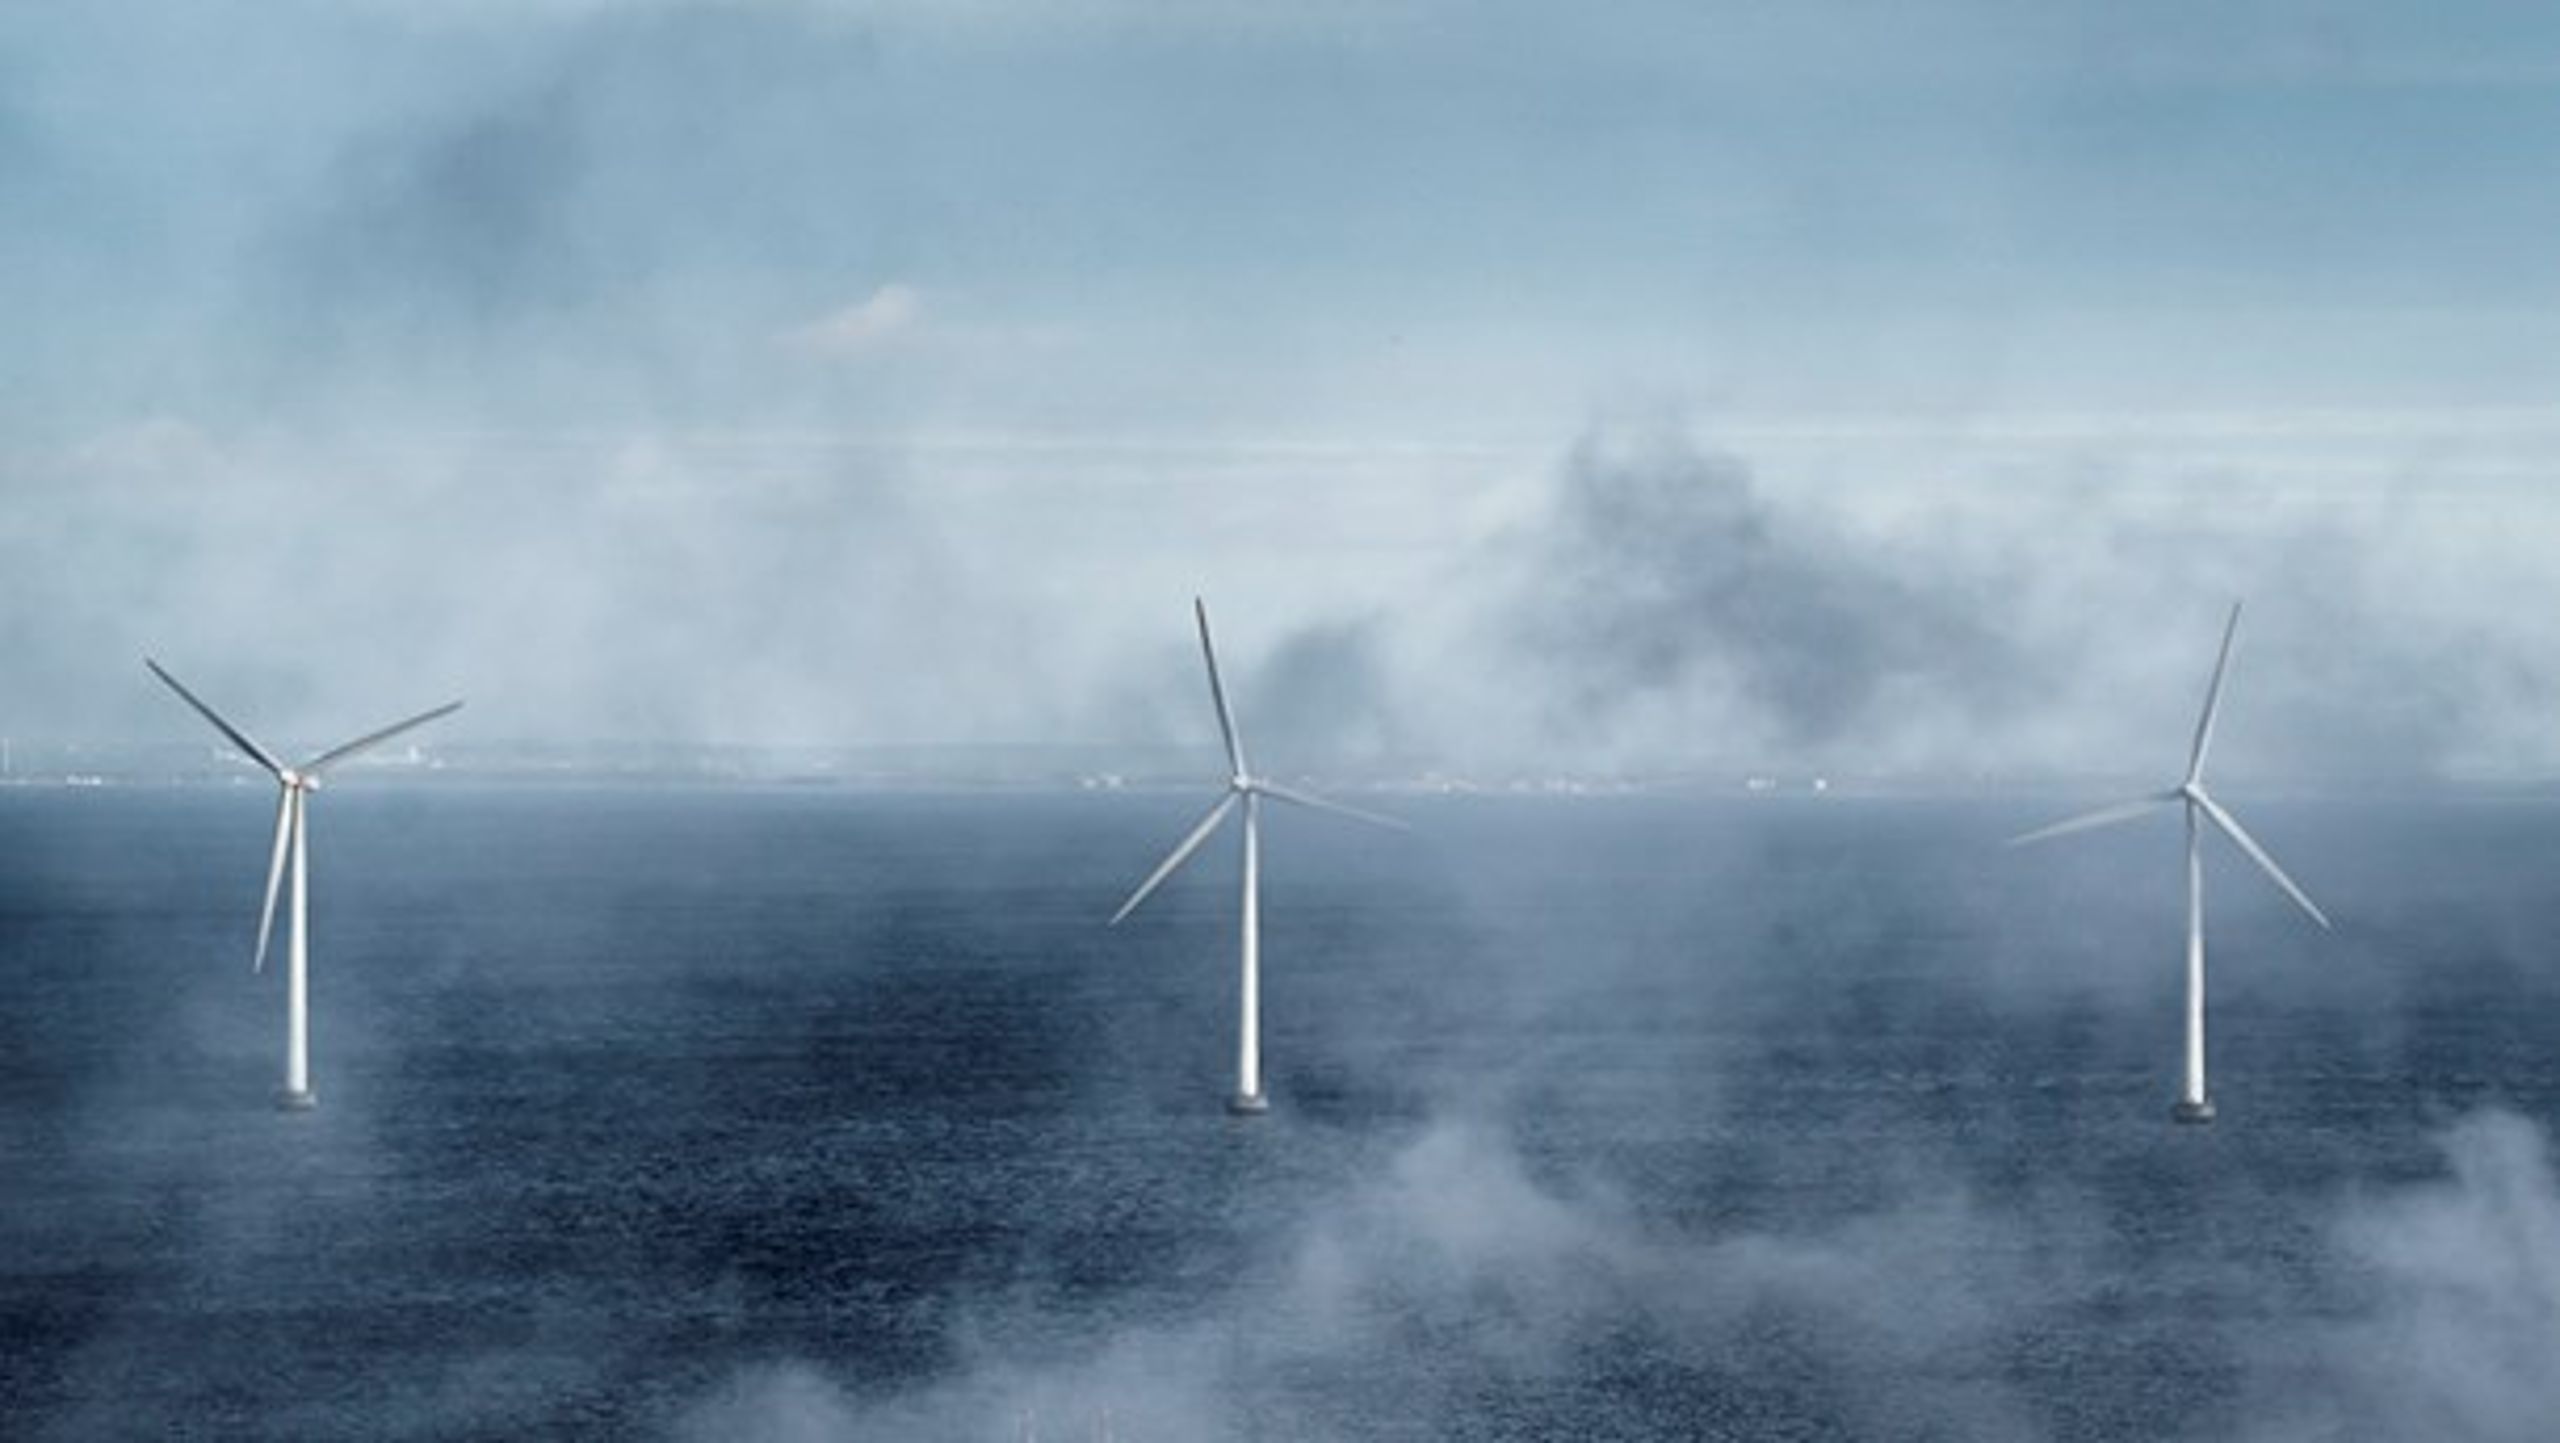 Selv langt ud i fremtiden er vi langt fra at kunne producere nok energi fra vindmøller til at kunne dække en brøkdel af transportbranchens enorme energiforbrug, skriver Noah.